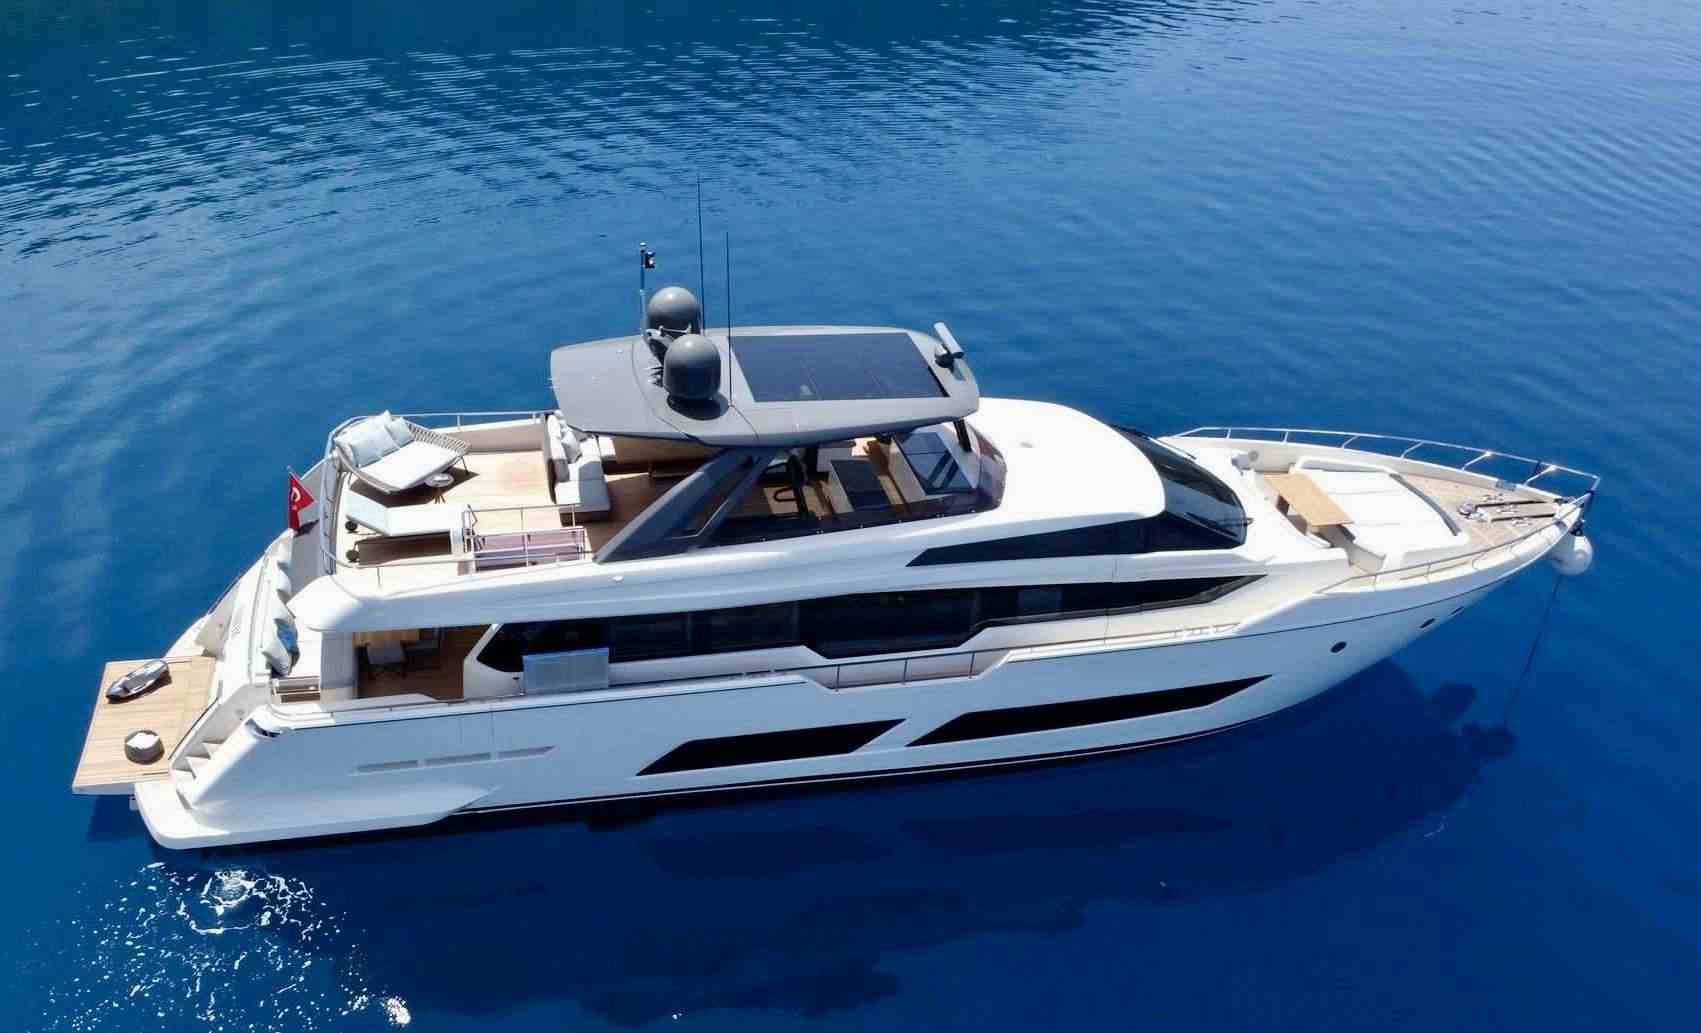 SHERO - Yacht Charter Porto Koufo & Boat hire in Greece & Turkey 1